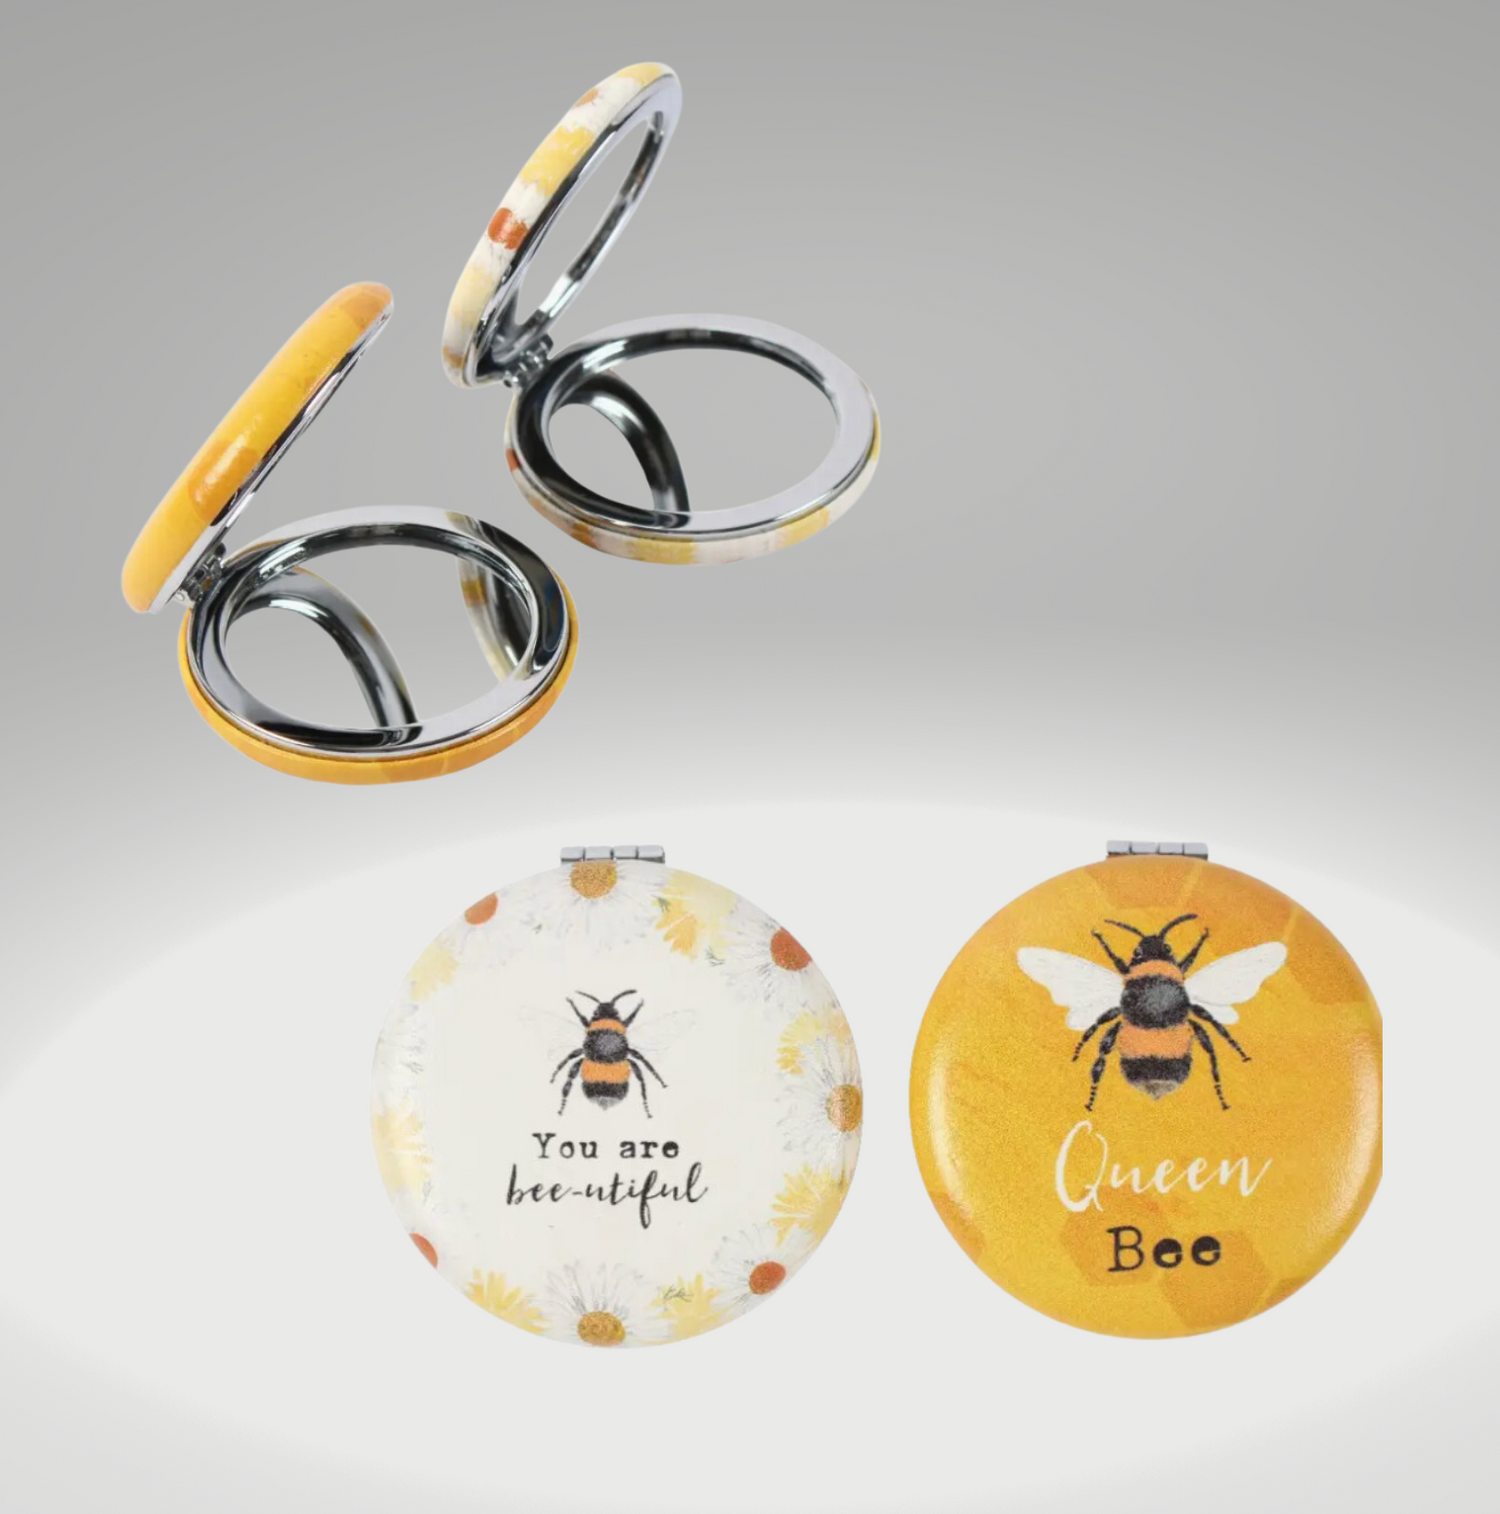 Luxe Queen Bee Gift Box